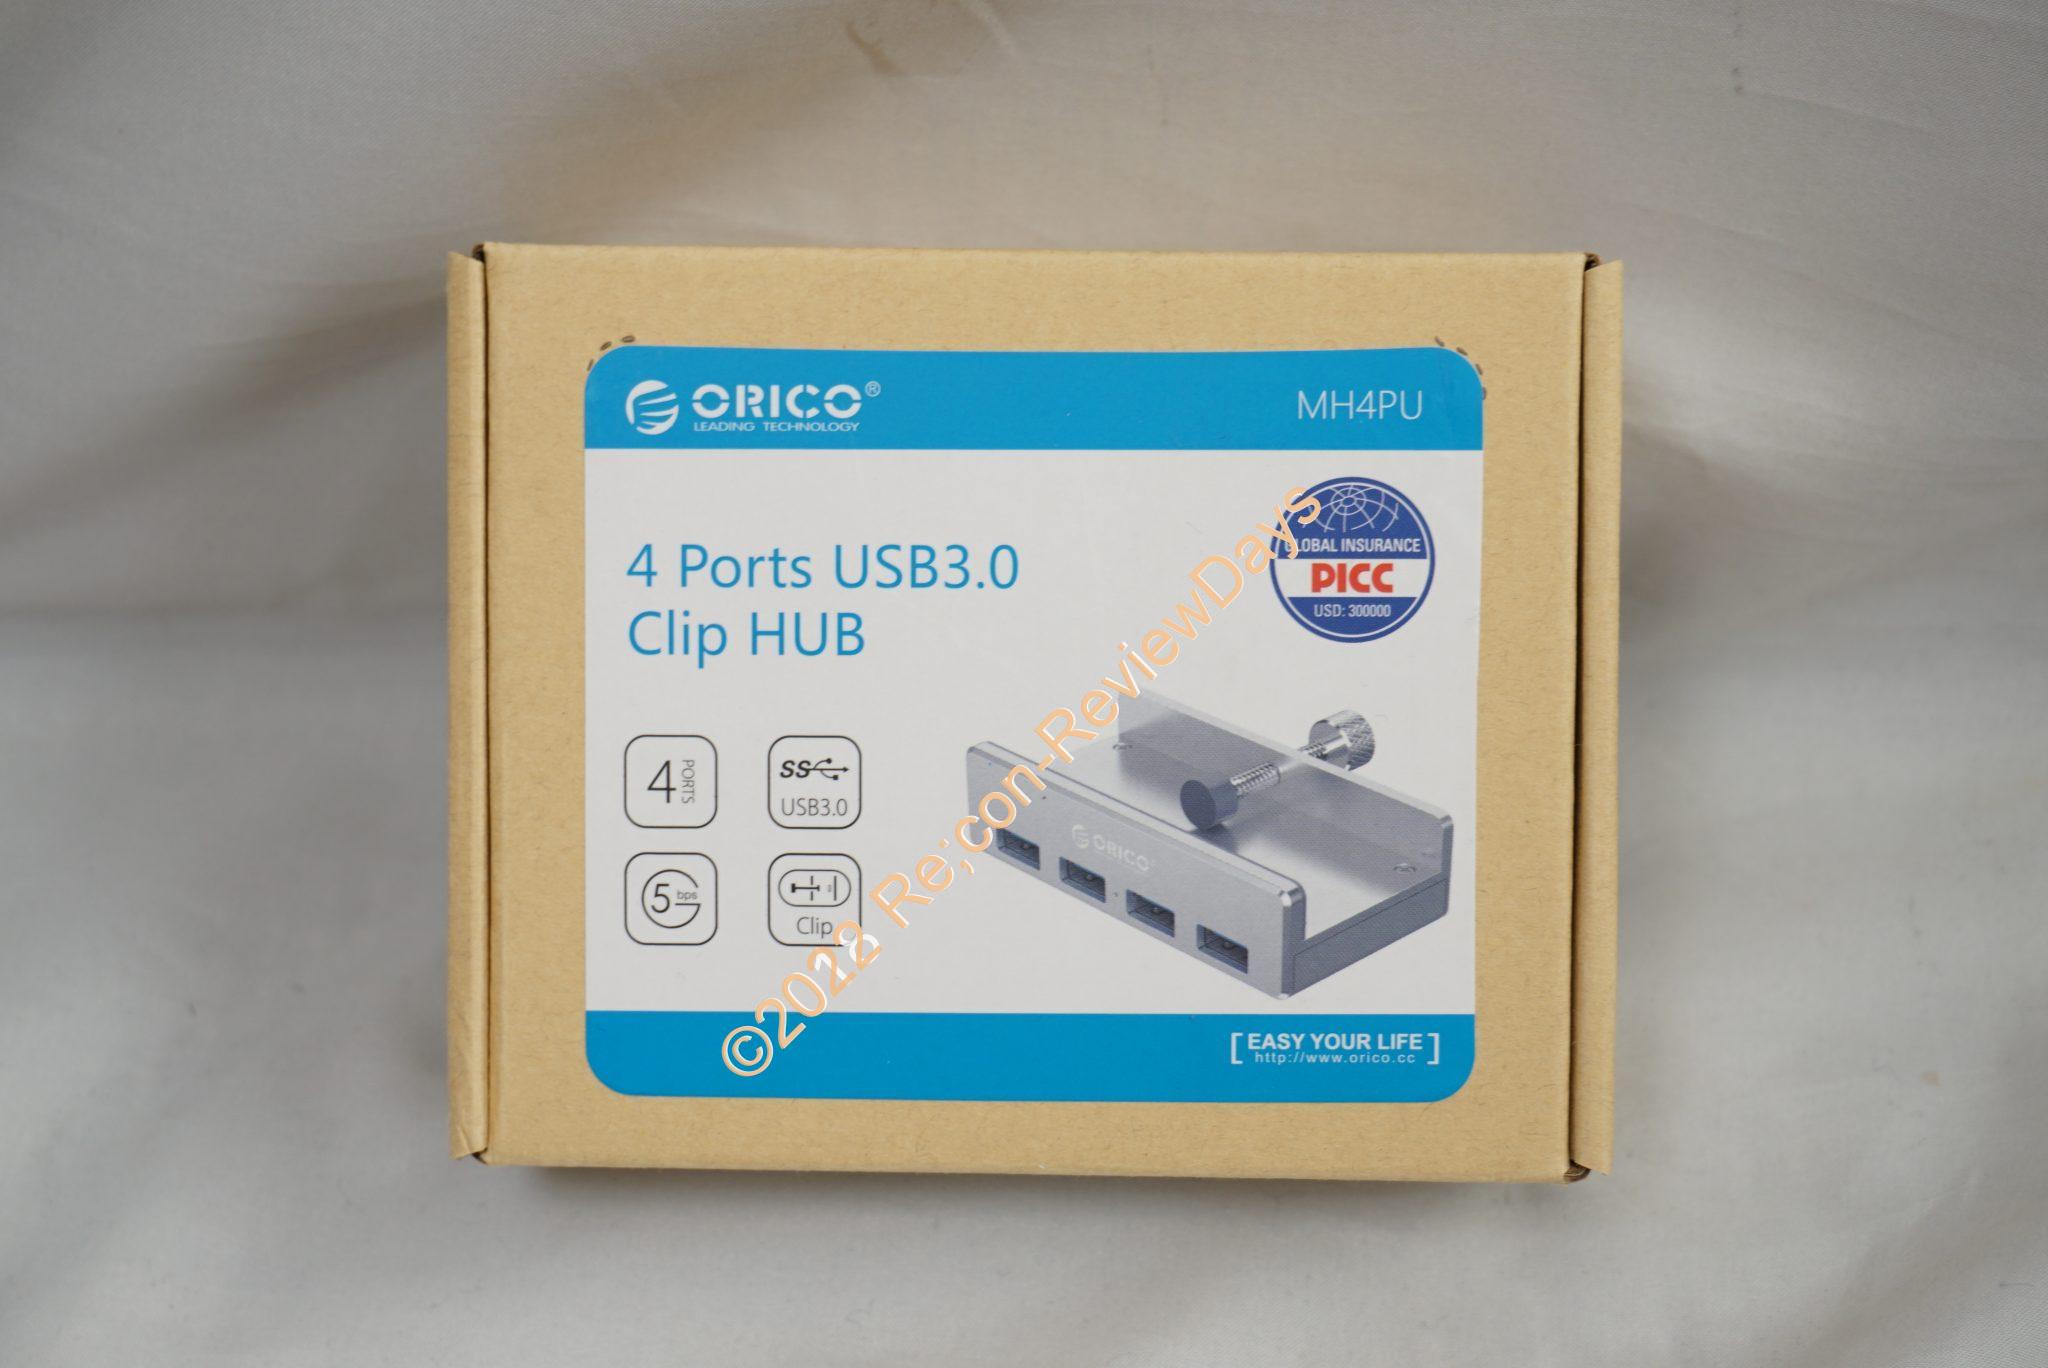 机に固定できるORICO製のUSB 3.0 4ポートハブ「MH4PU-SV」を検証する #USBハブ #USB #ORICO